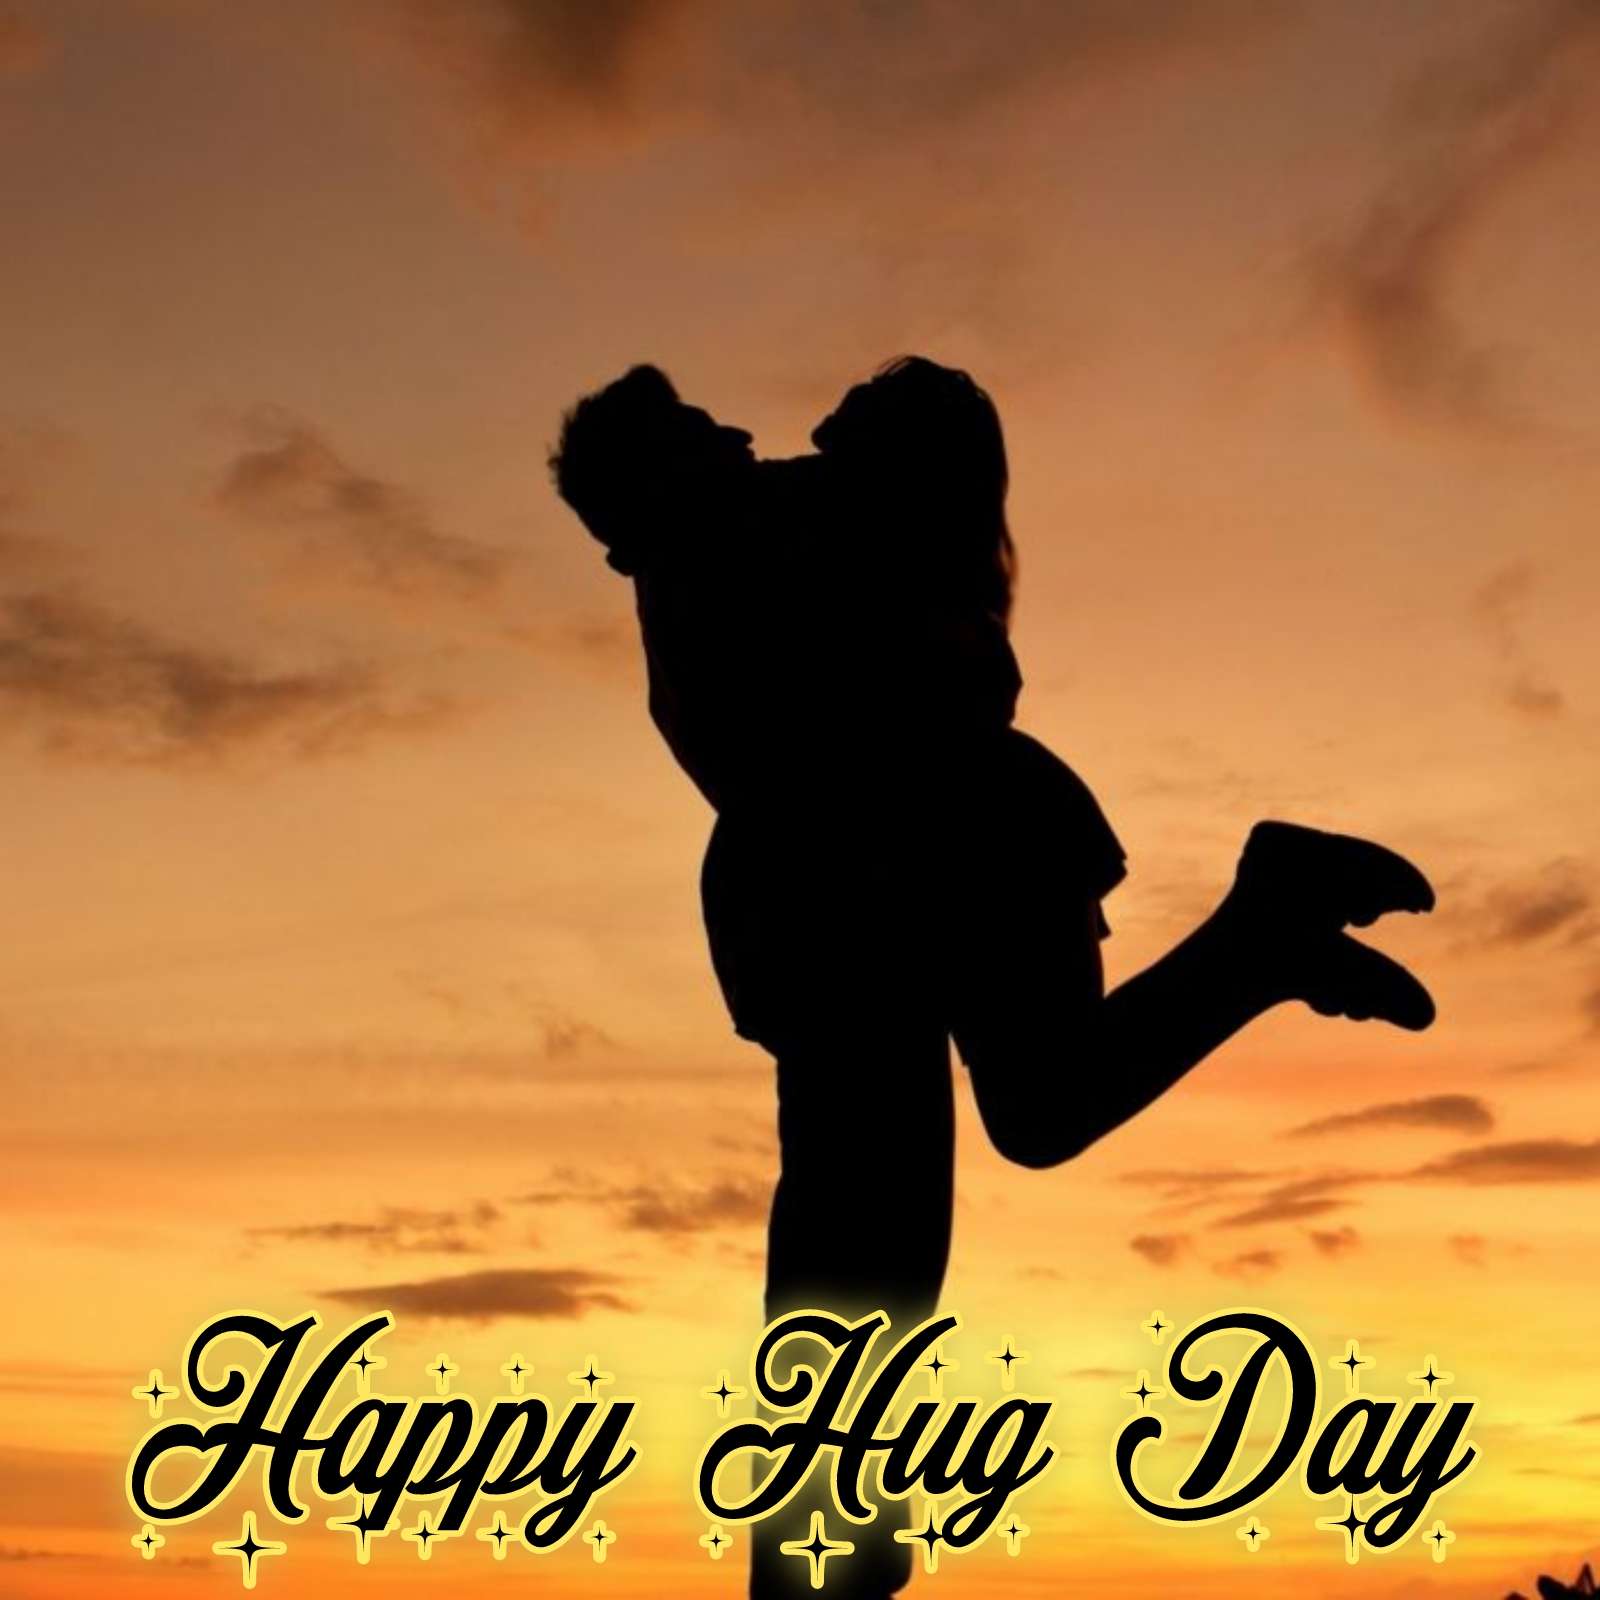 Happy Hug Day Photo Download